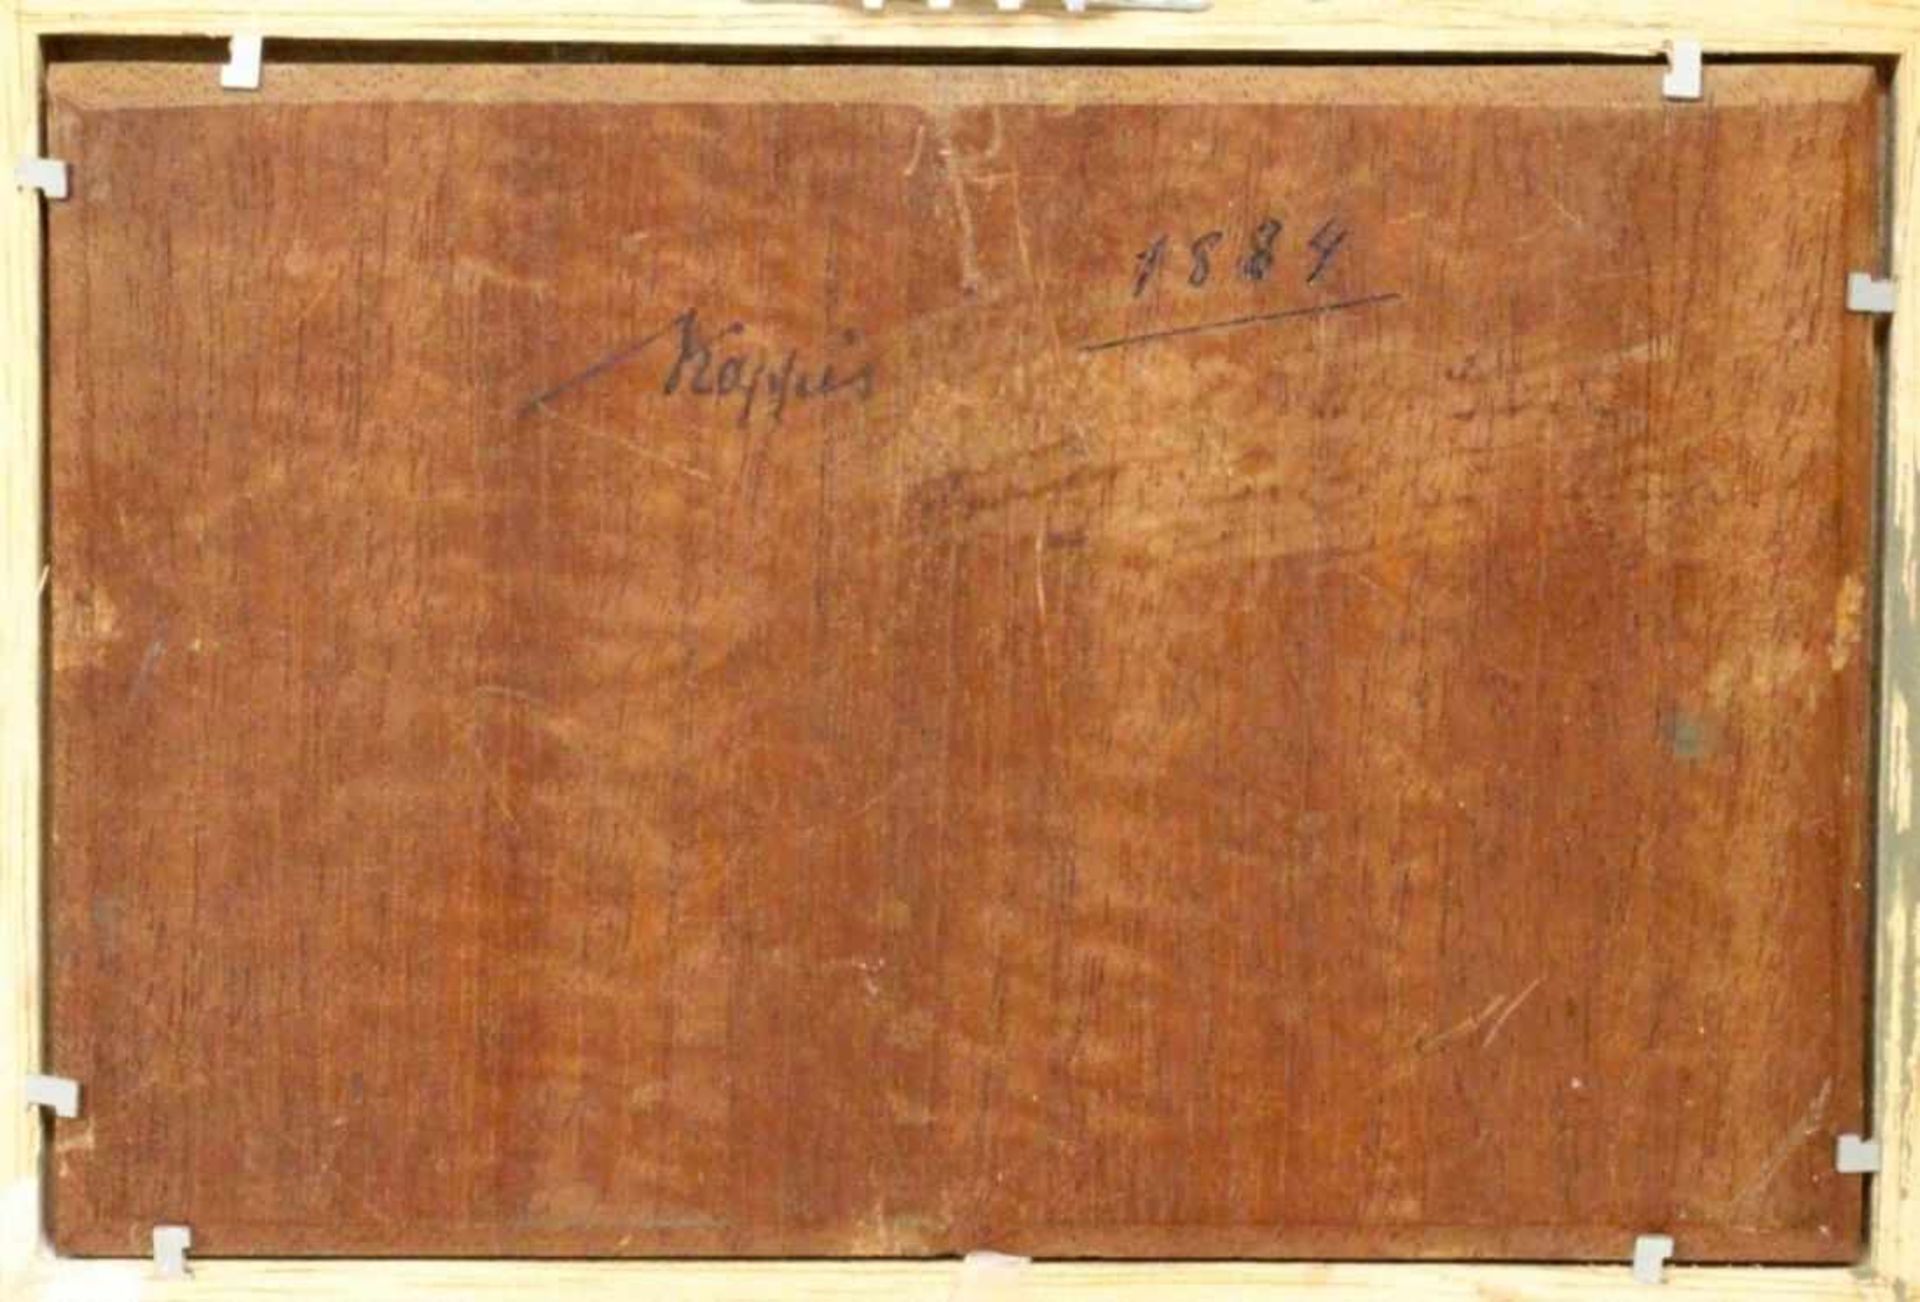 KAPPIS, ALBERT Wildberg 1836 - 1914 Stuttgart Farmers at Hay Making. Oil on panel, signed. - Image 2 of 2